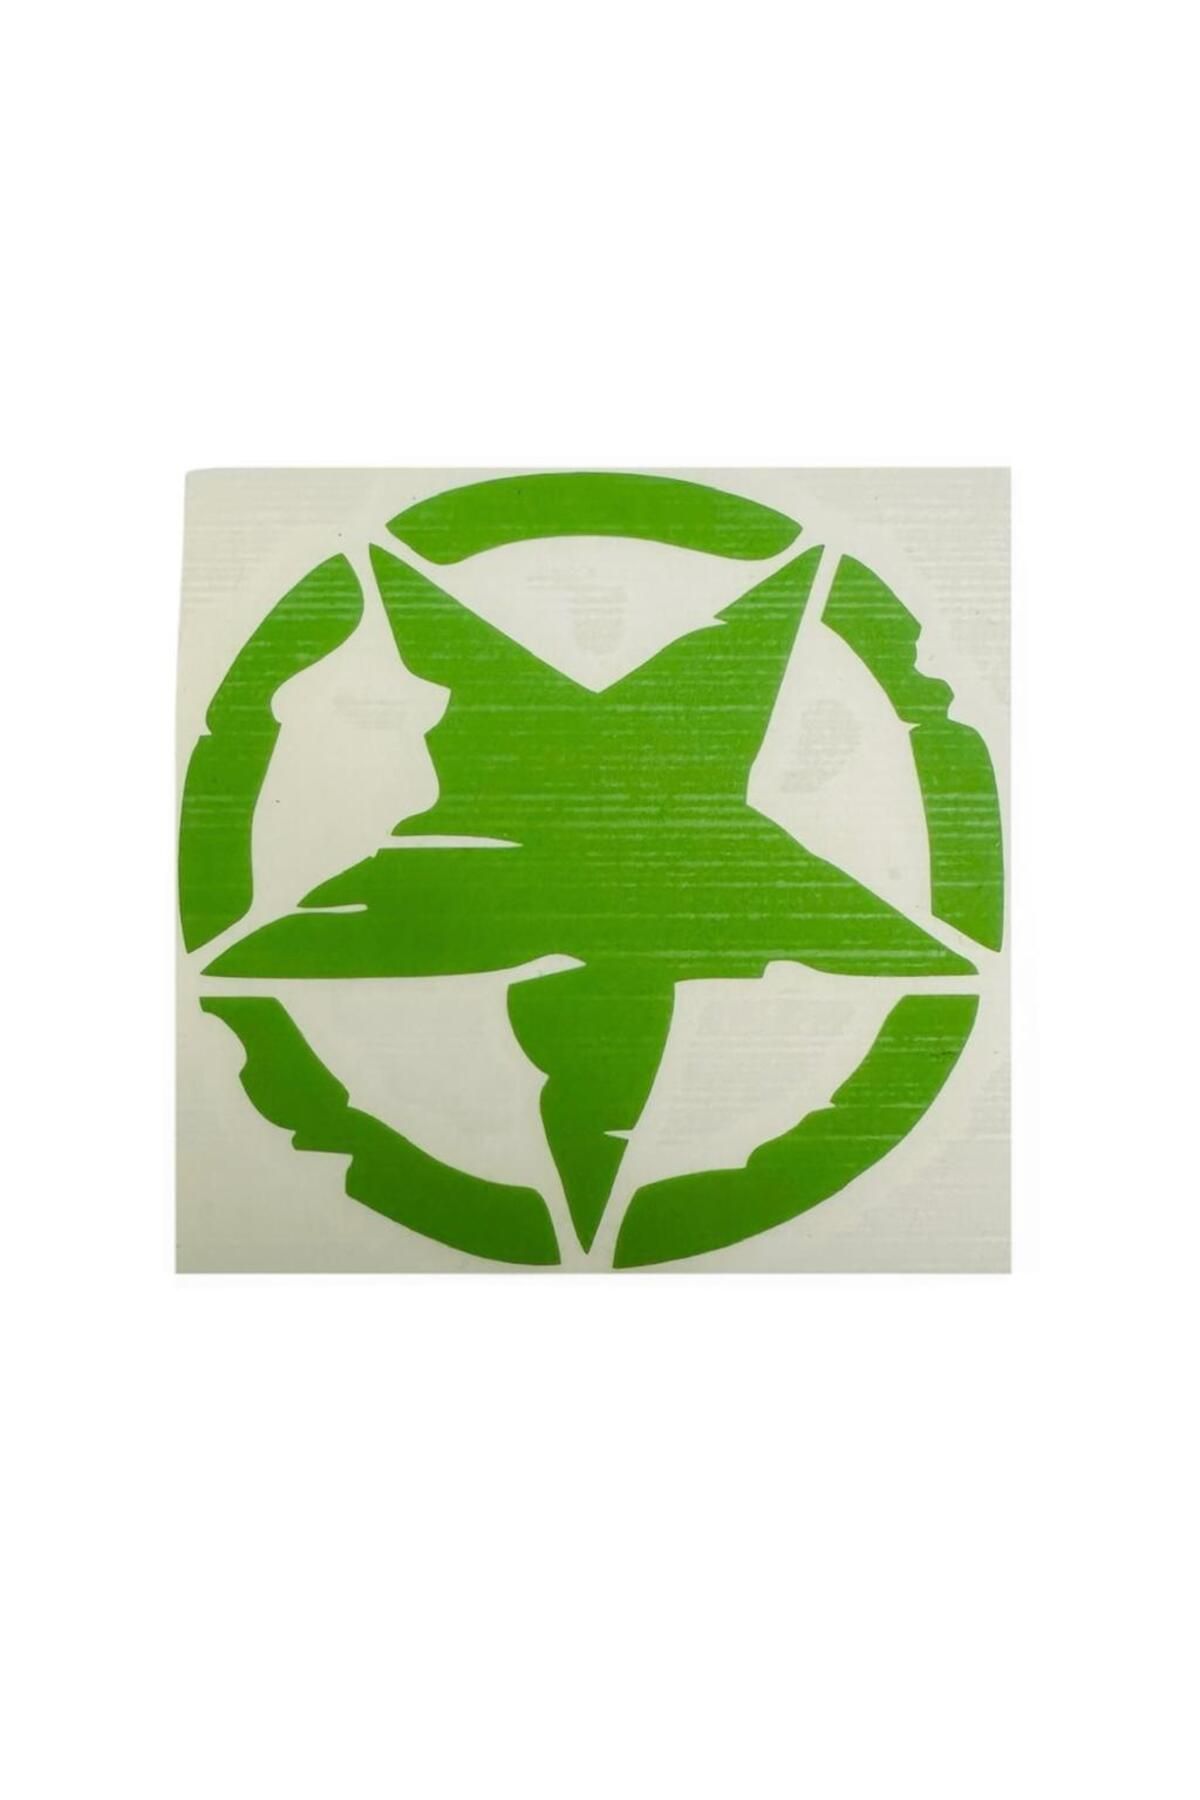 Gogo Yıldız Desenli Yeşil Sticker 75 X 75 Mm